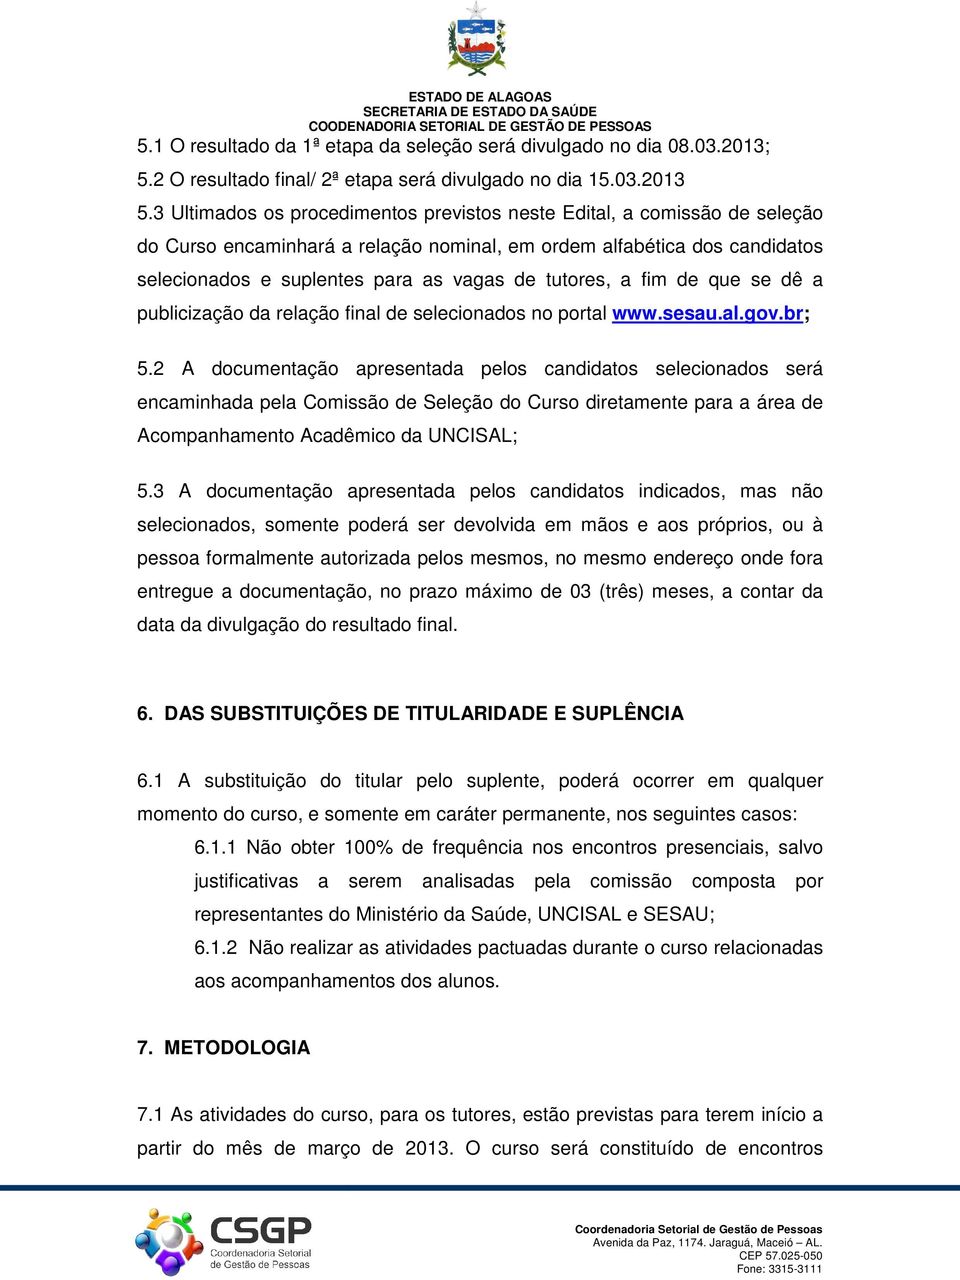 tutores, a fim de que se dê a publicização da relação final de selecionados no portal www.sesau.al.gov.br; 5.